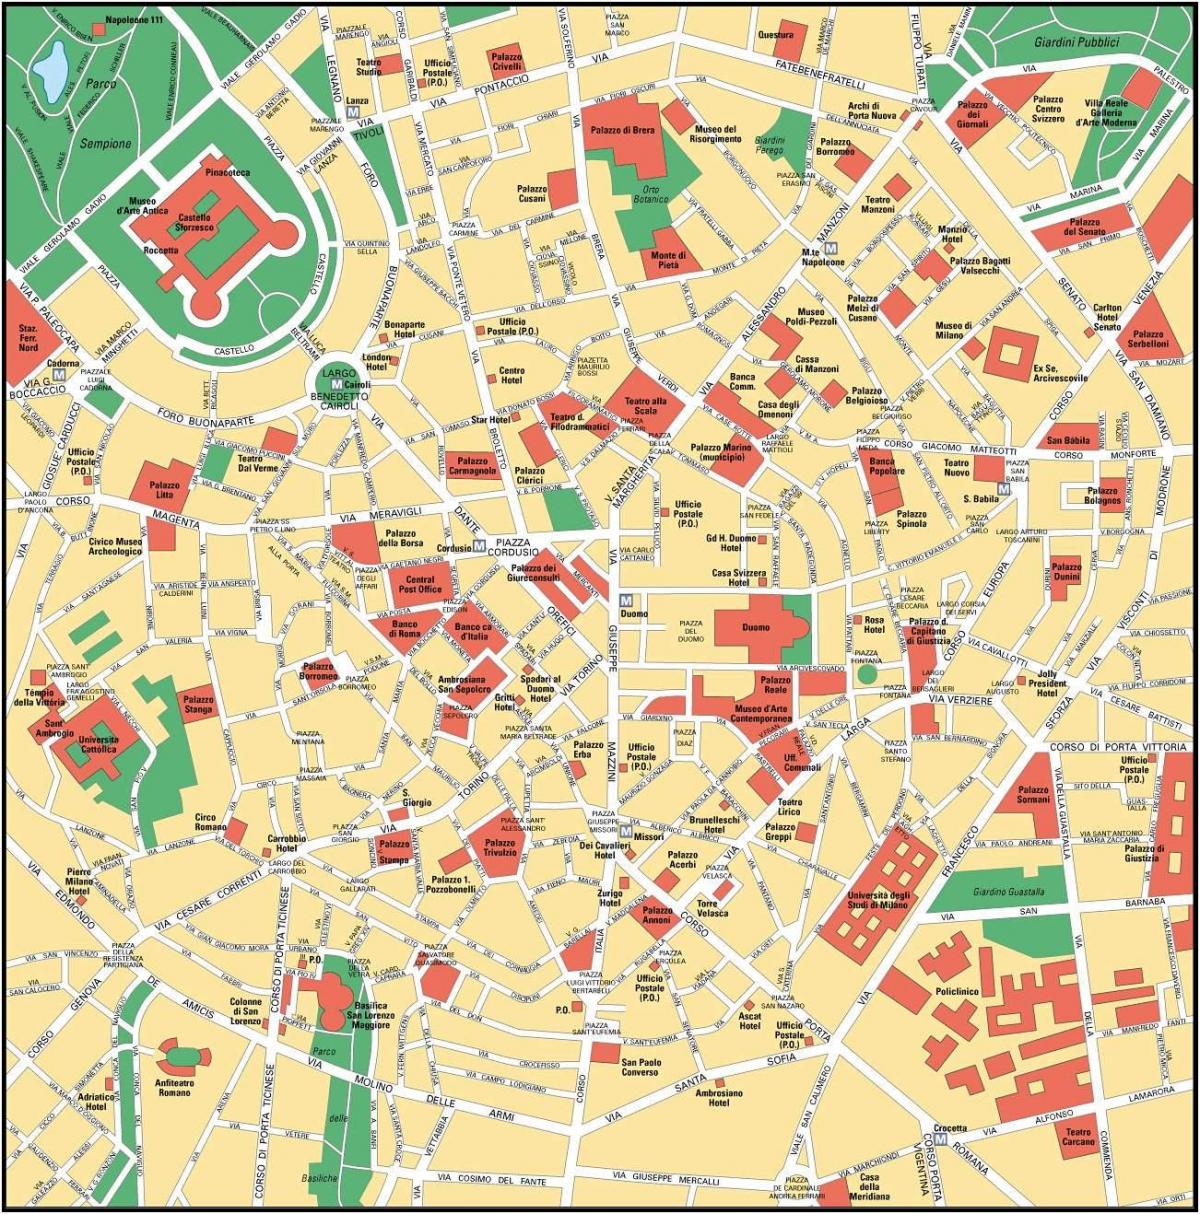 μιλάνο, ιταλία κέντρο της πόλης χάρτη